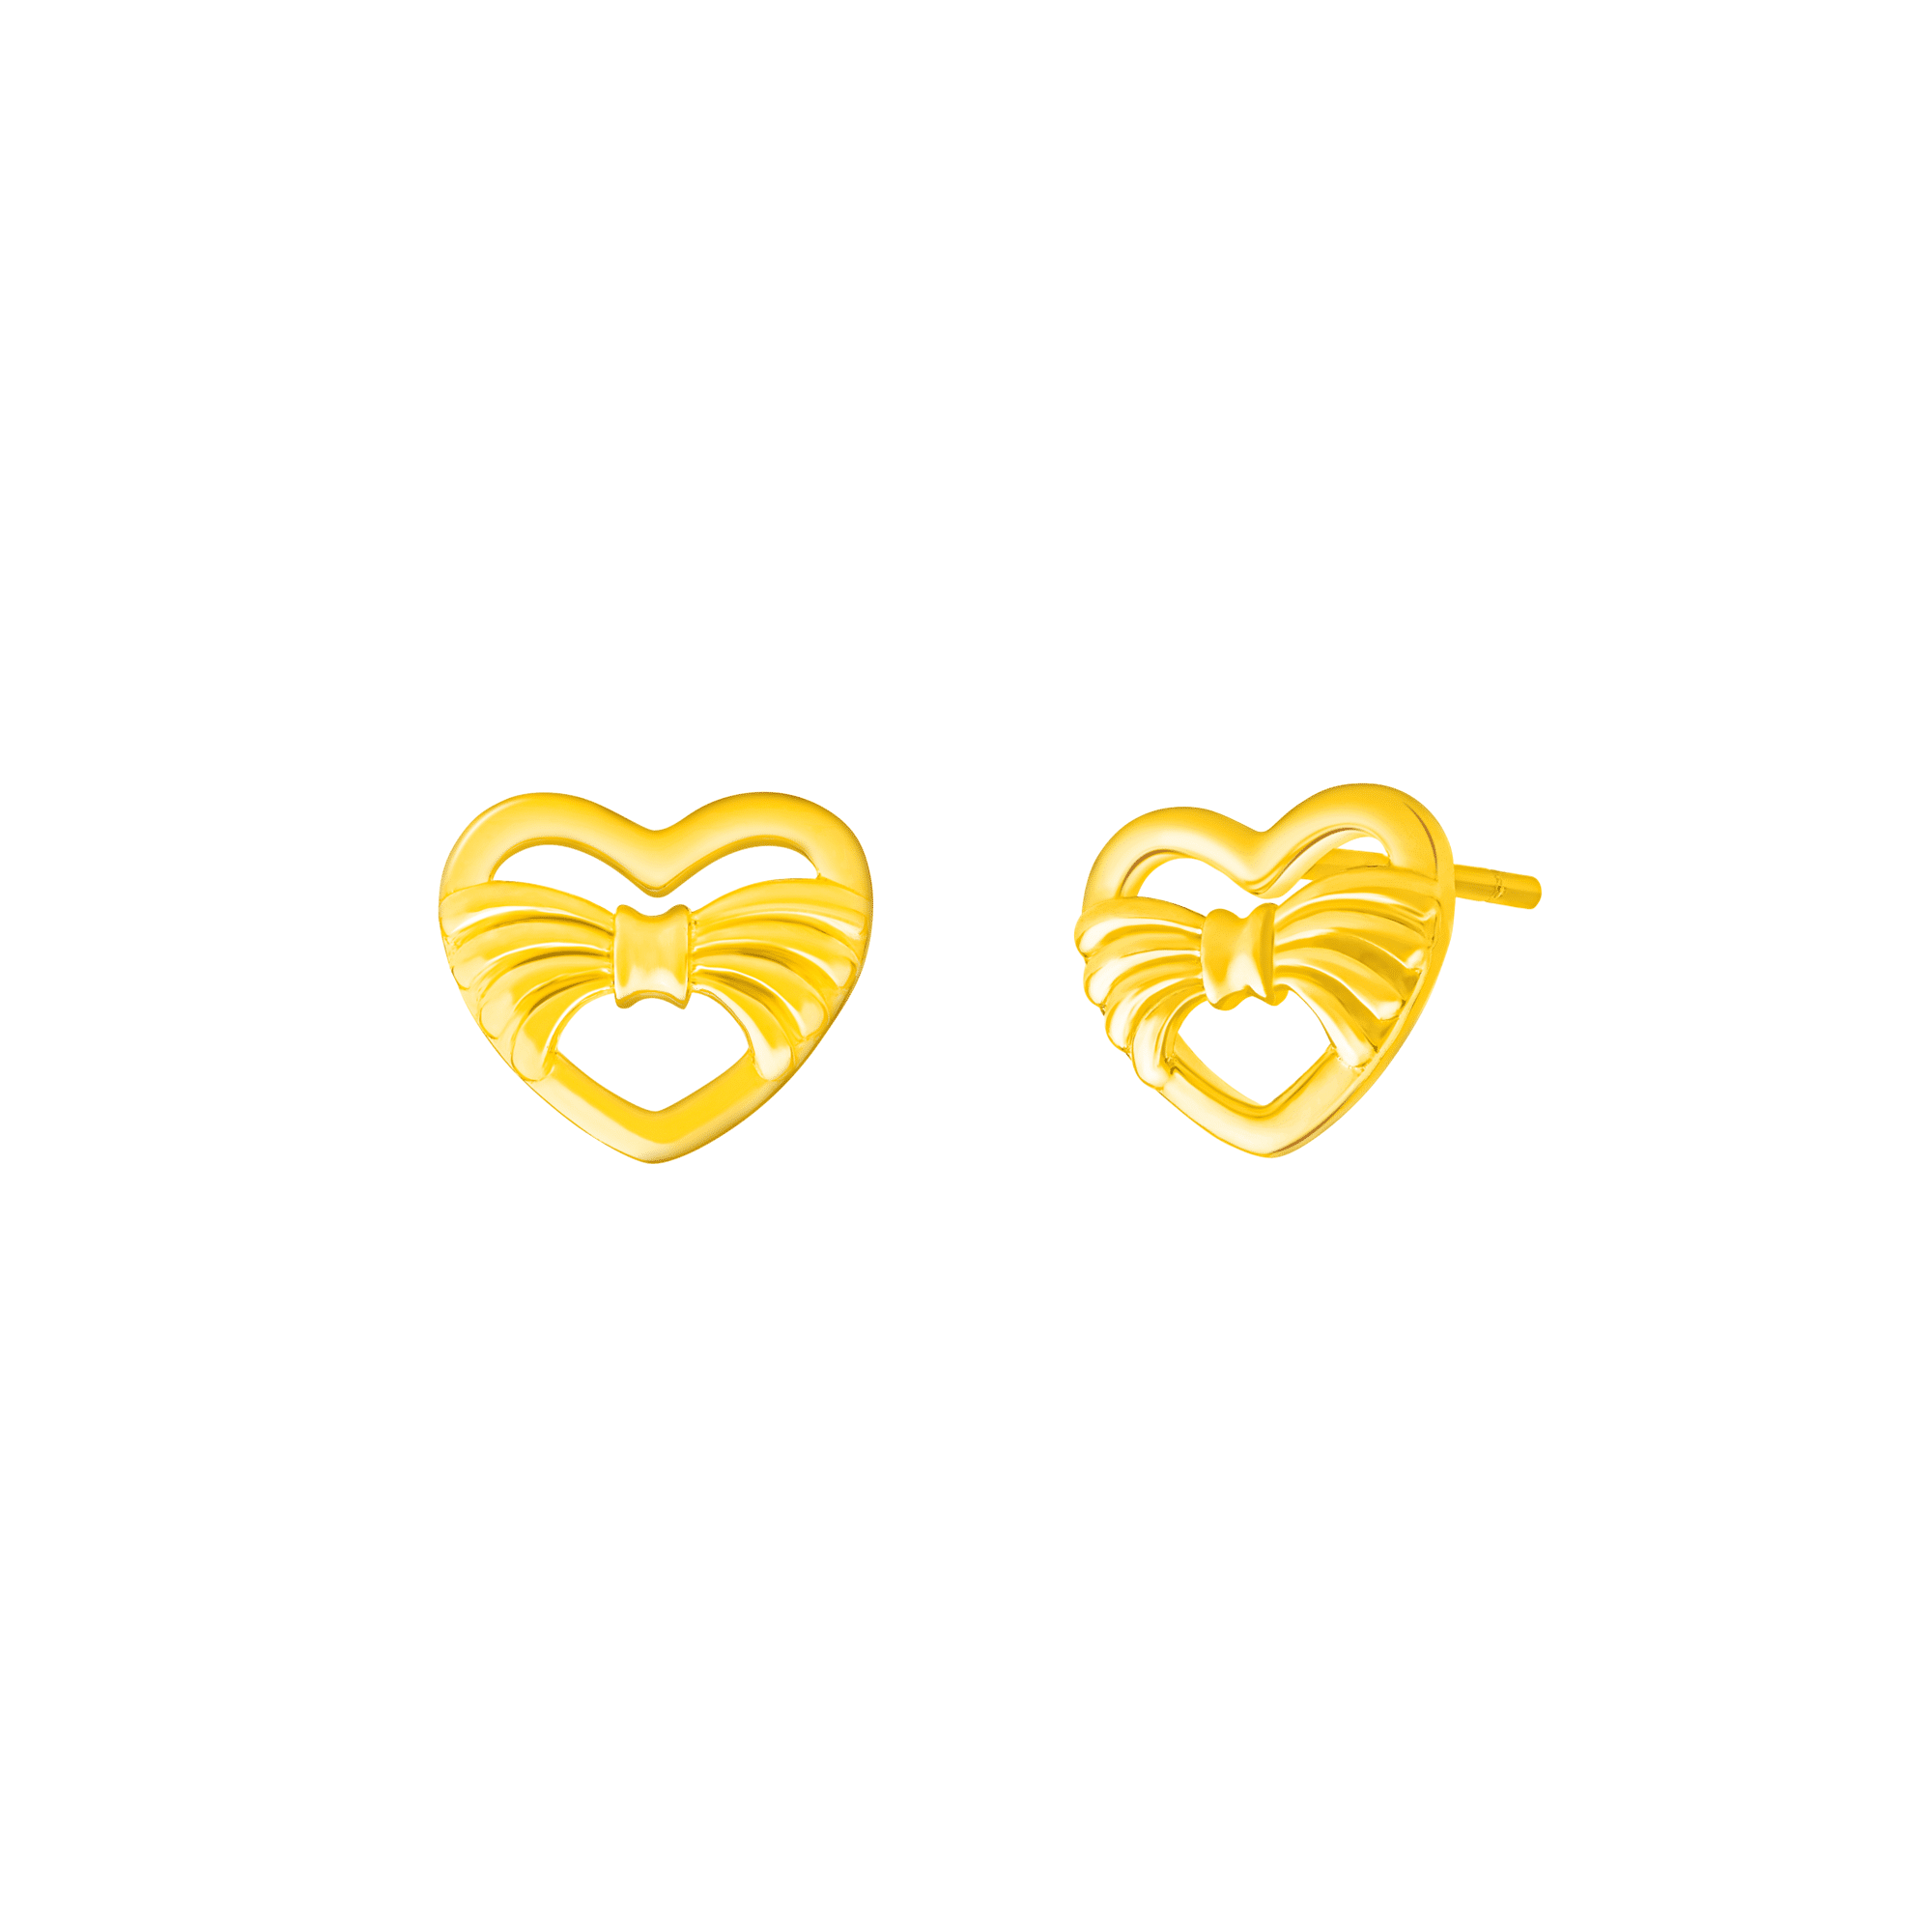 Ribbon Heart Earrings in 916 Gold